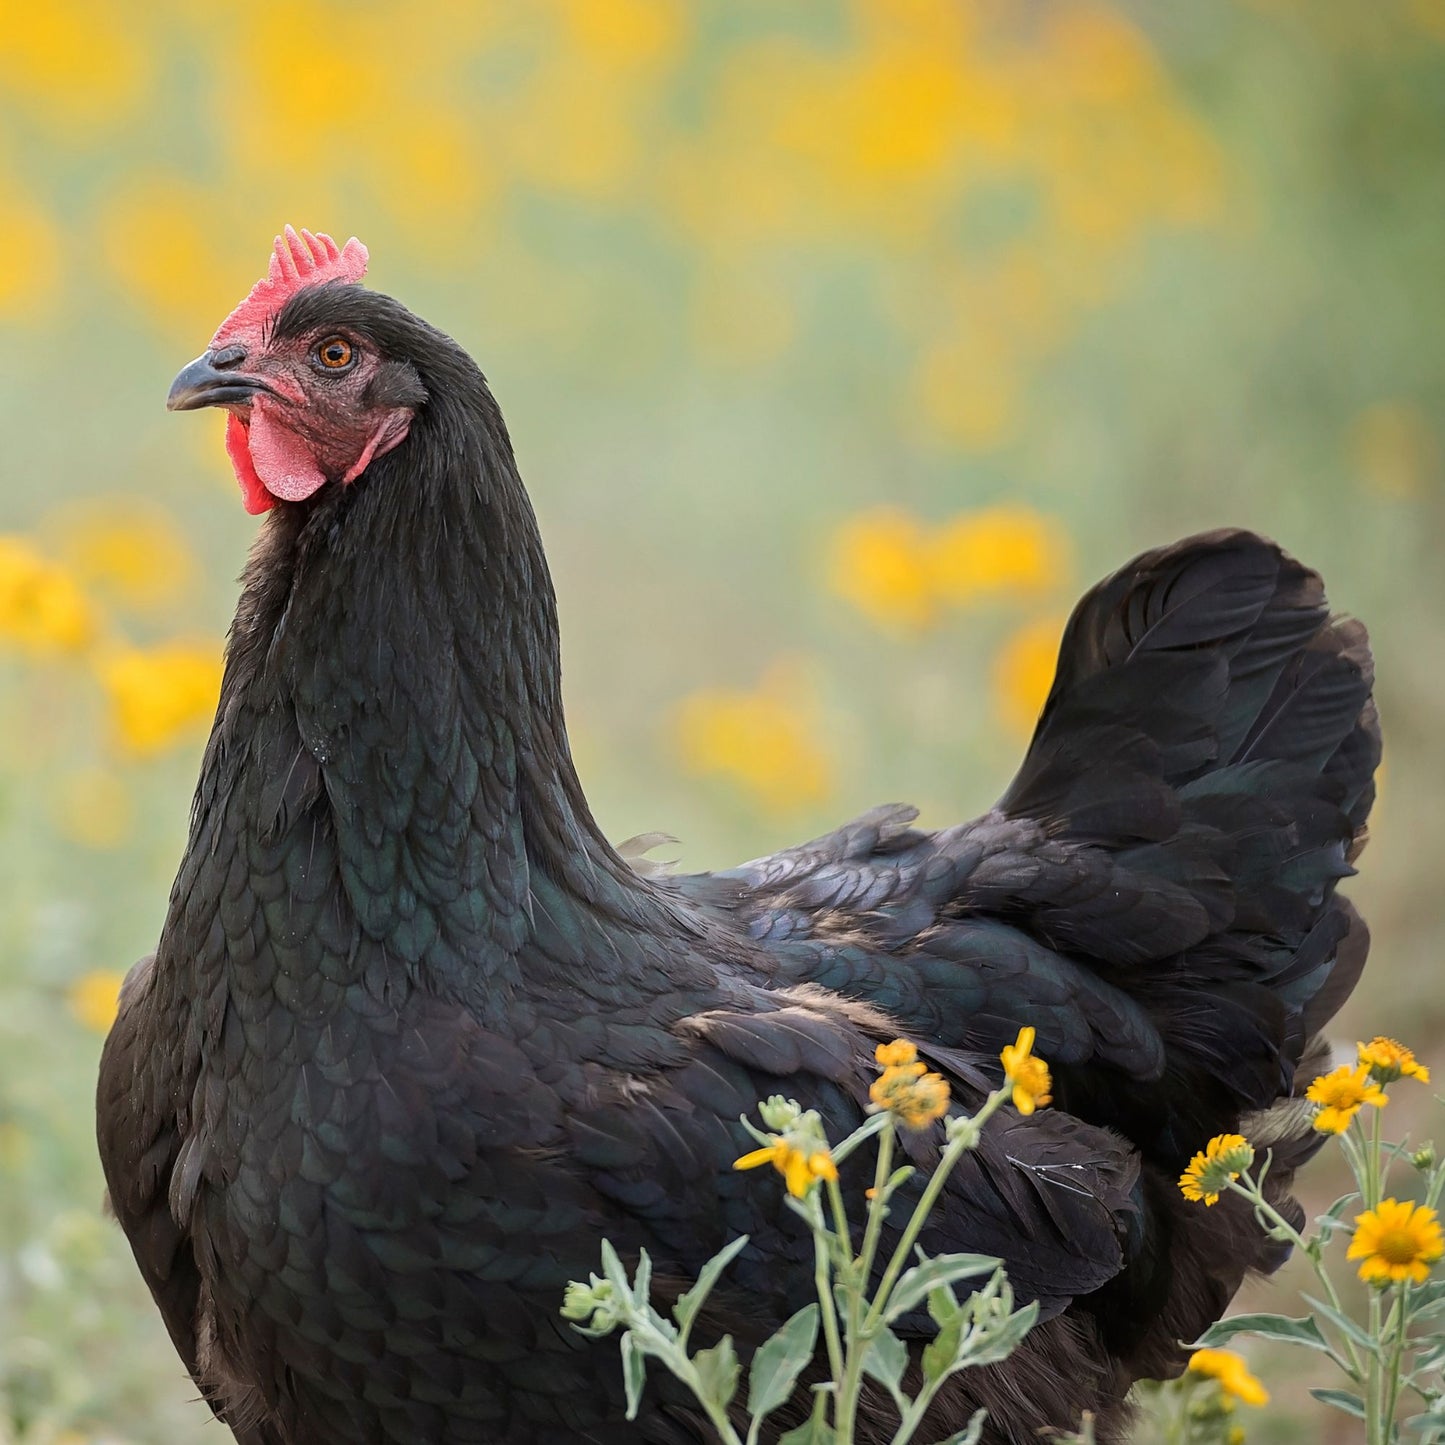 Black Australorp chicken breed. 